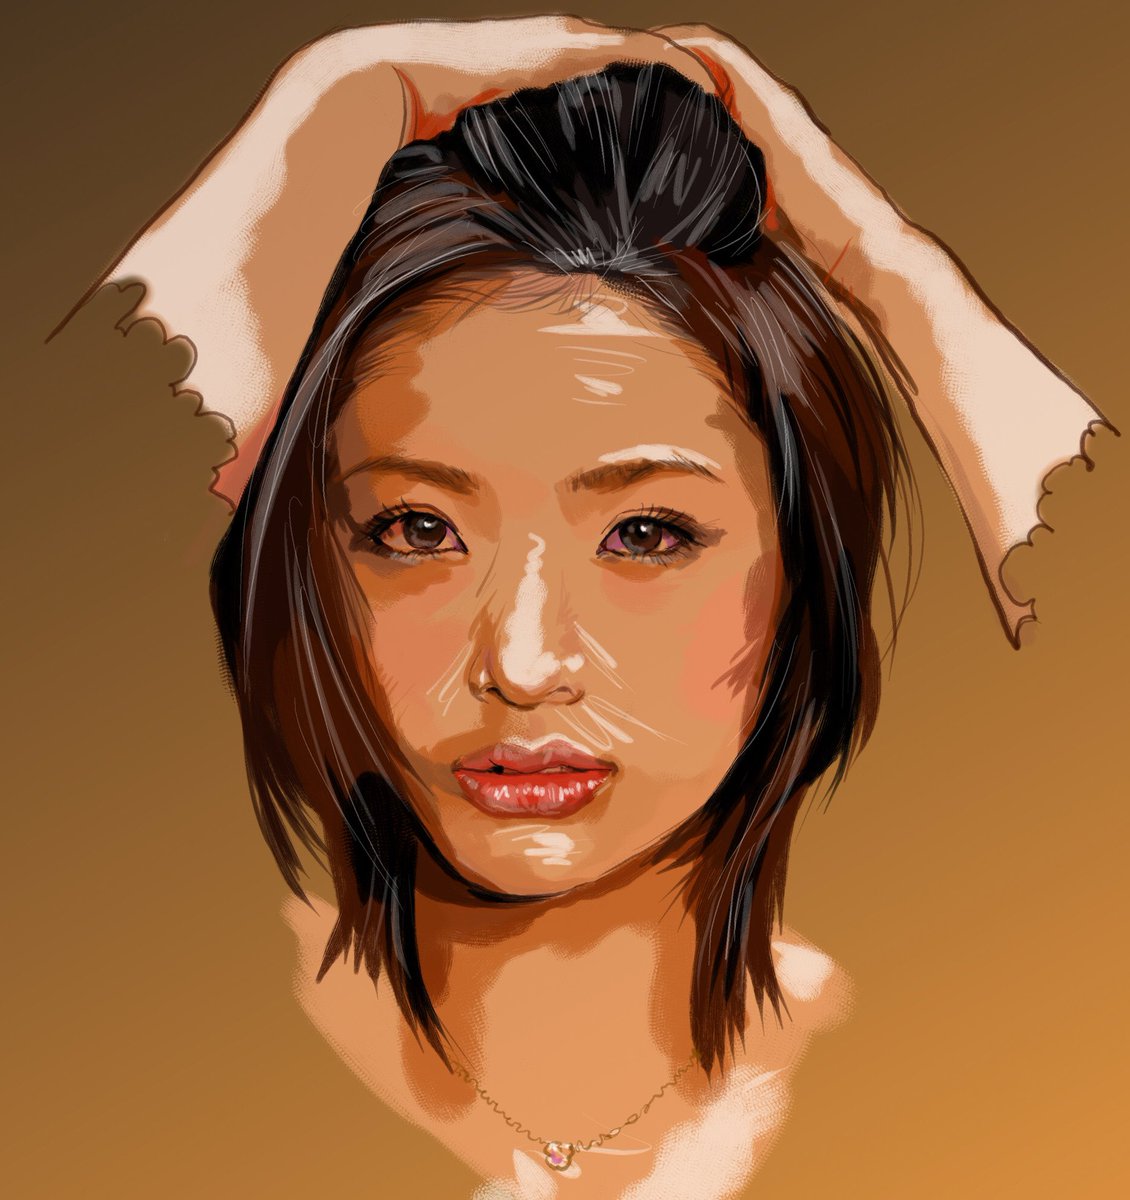 上戸彩さん
#似顔絵 #イラスト #イラストレーション #女優 #上戸彩 #caricature #illustration #portrait #artwork #drawing #actress #ayaueto